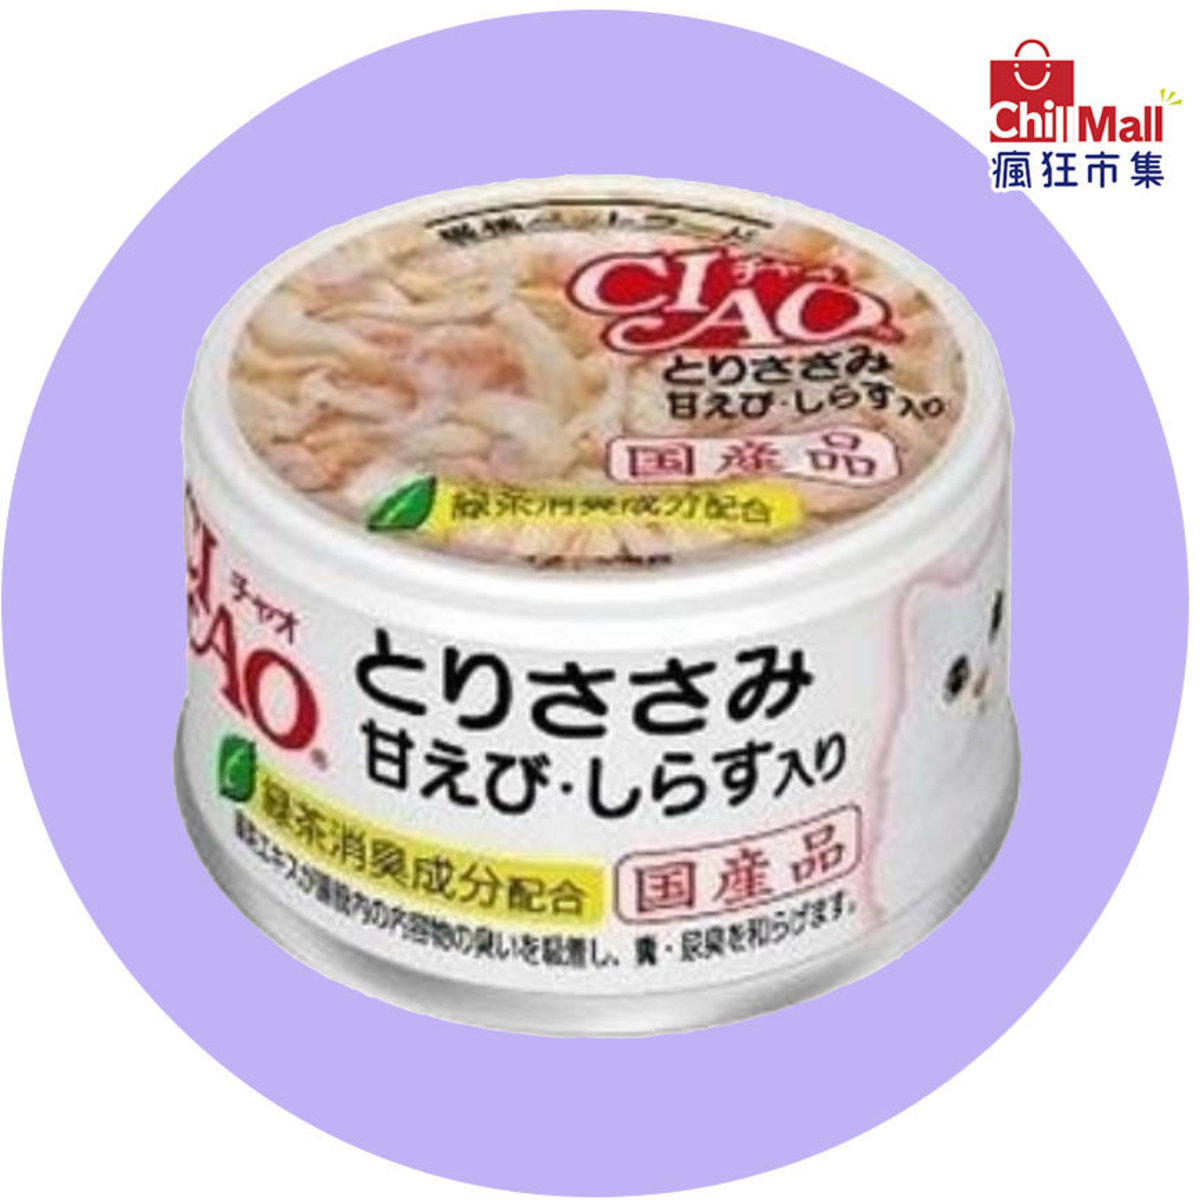 CIAO 日本貓罐頭 甜蝦及白飯魚 85g (白) (A-20) 3061479